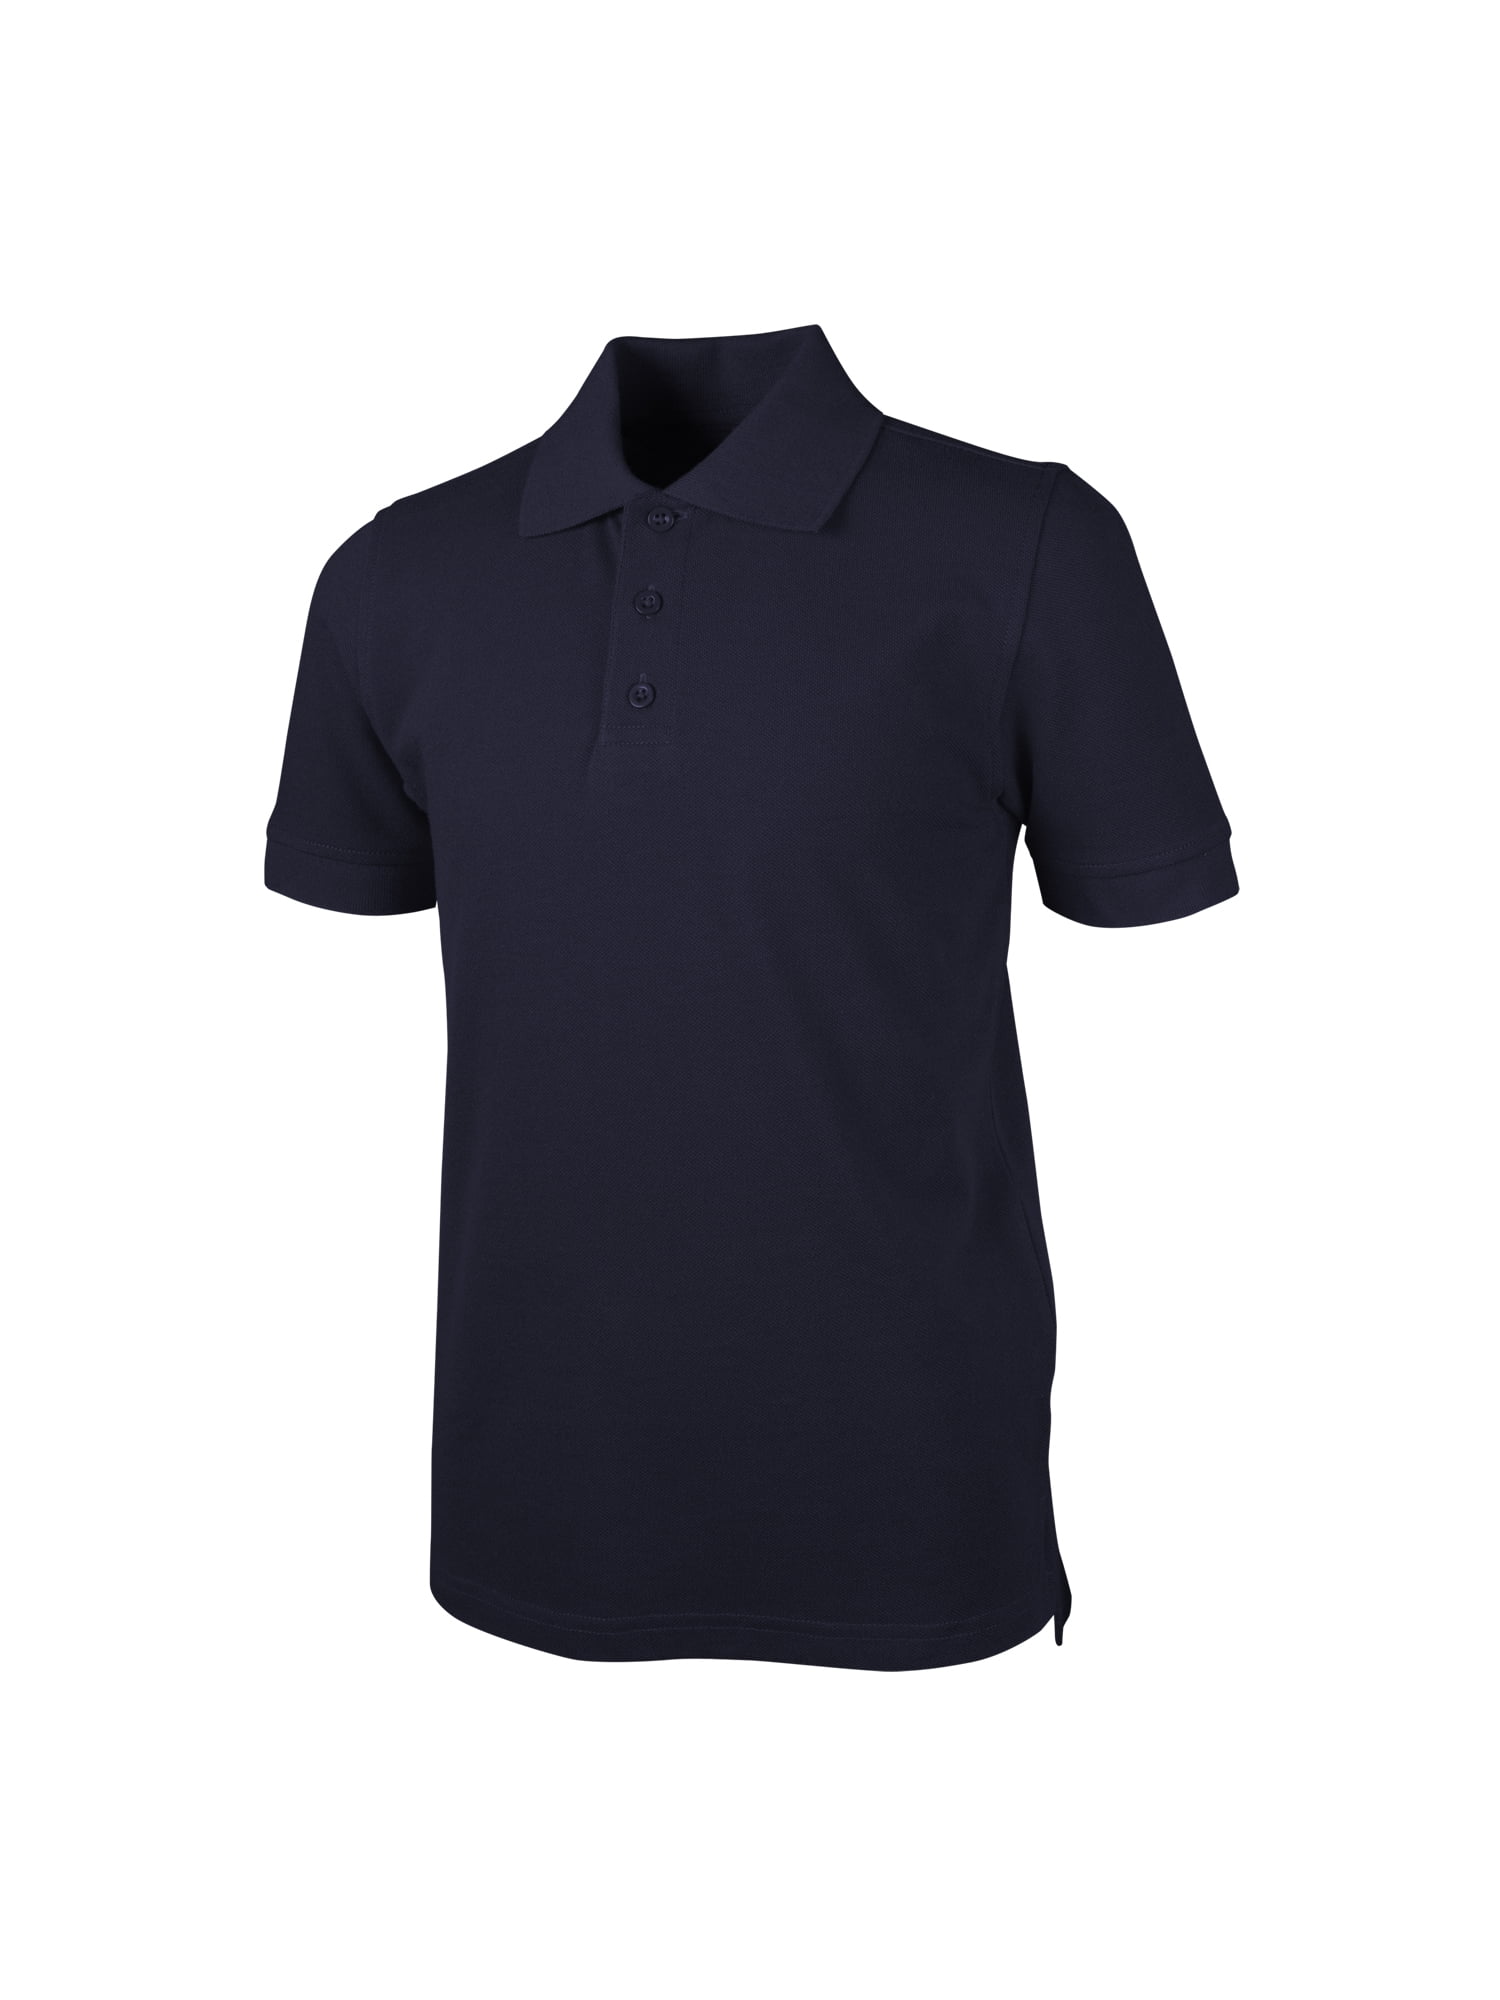 Essentials Boys Uniform Short-Sleeve Pique Polo Shirts